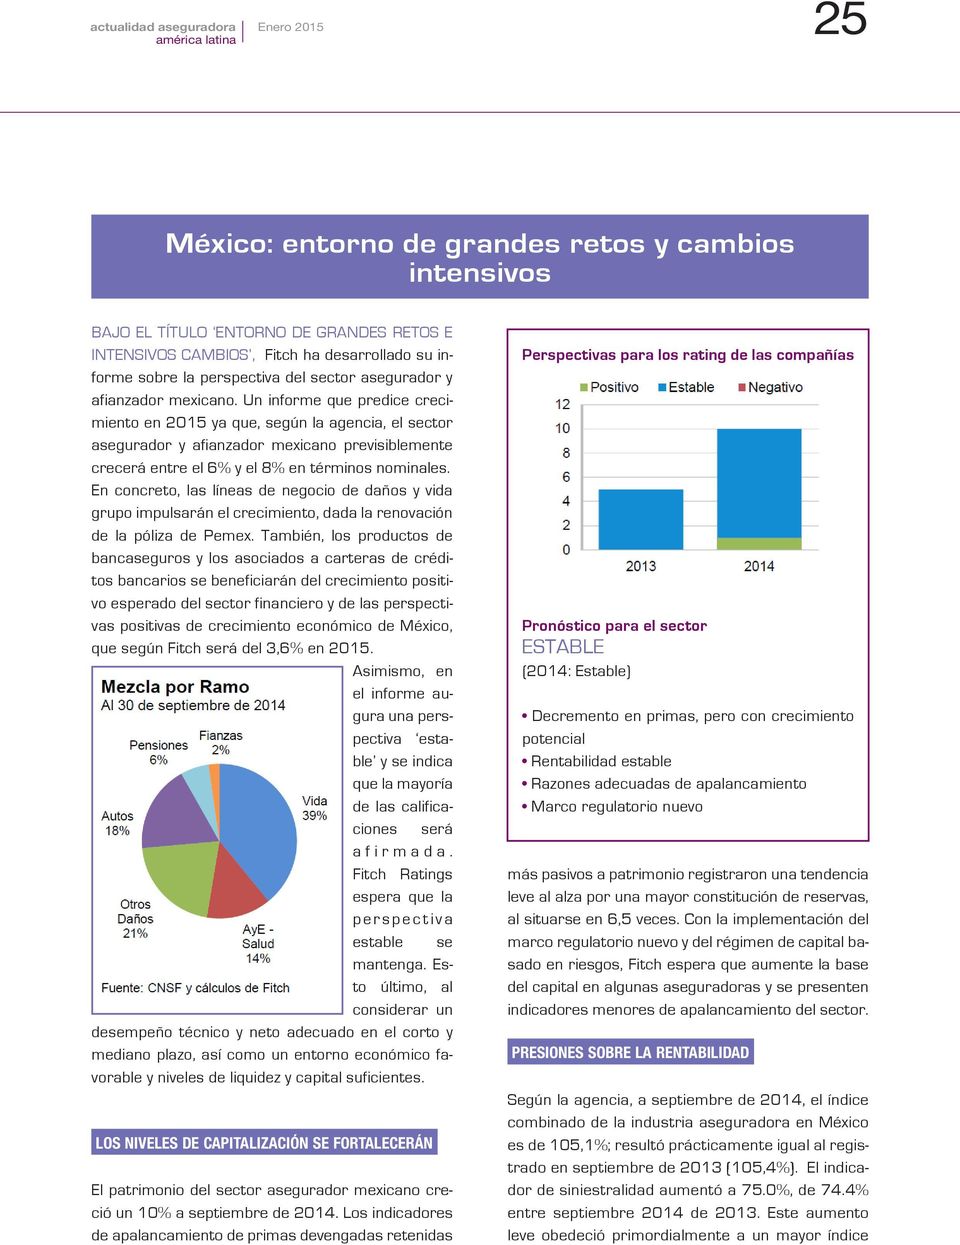 Un informe que predice crecimiento en 2015 ya que, según la agencia, el sector asegurador y afianzador mexicano previsiblemente crecerá entre el 6% y el 8% en términos nominales.